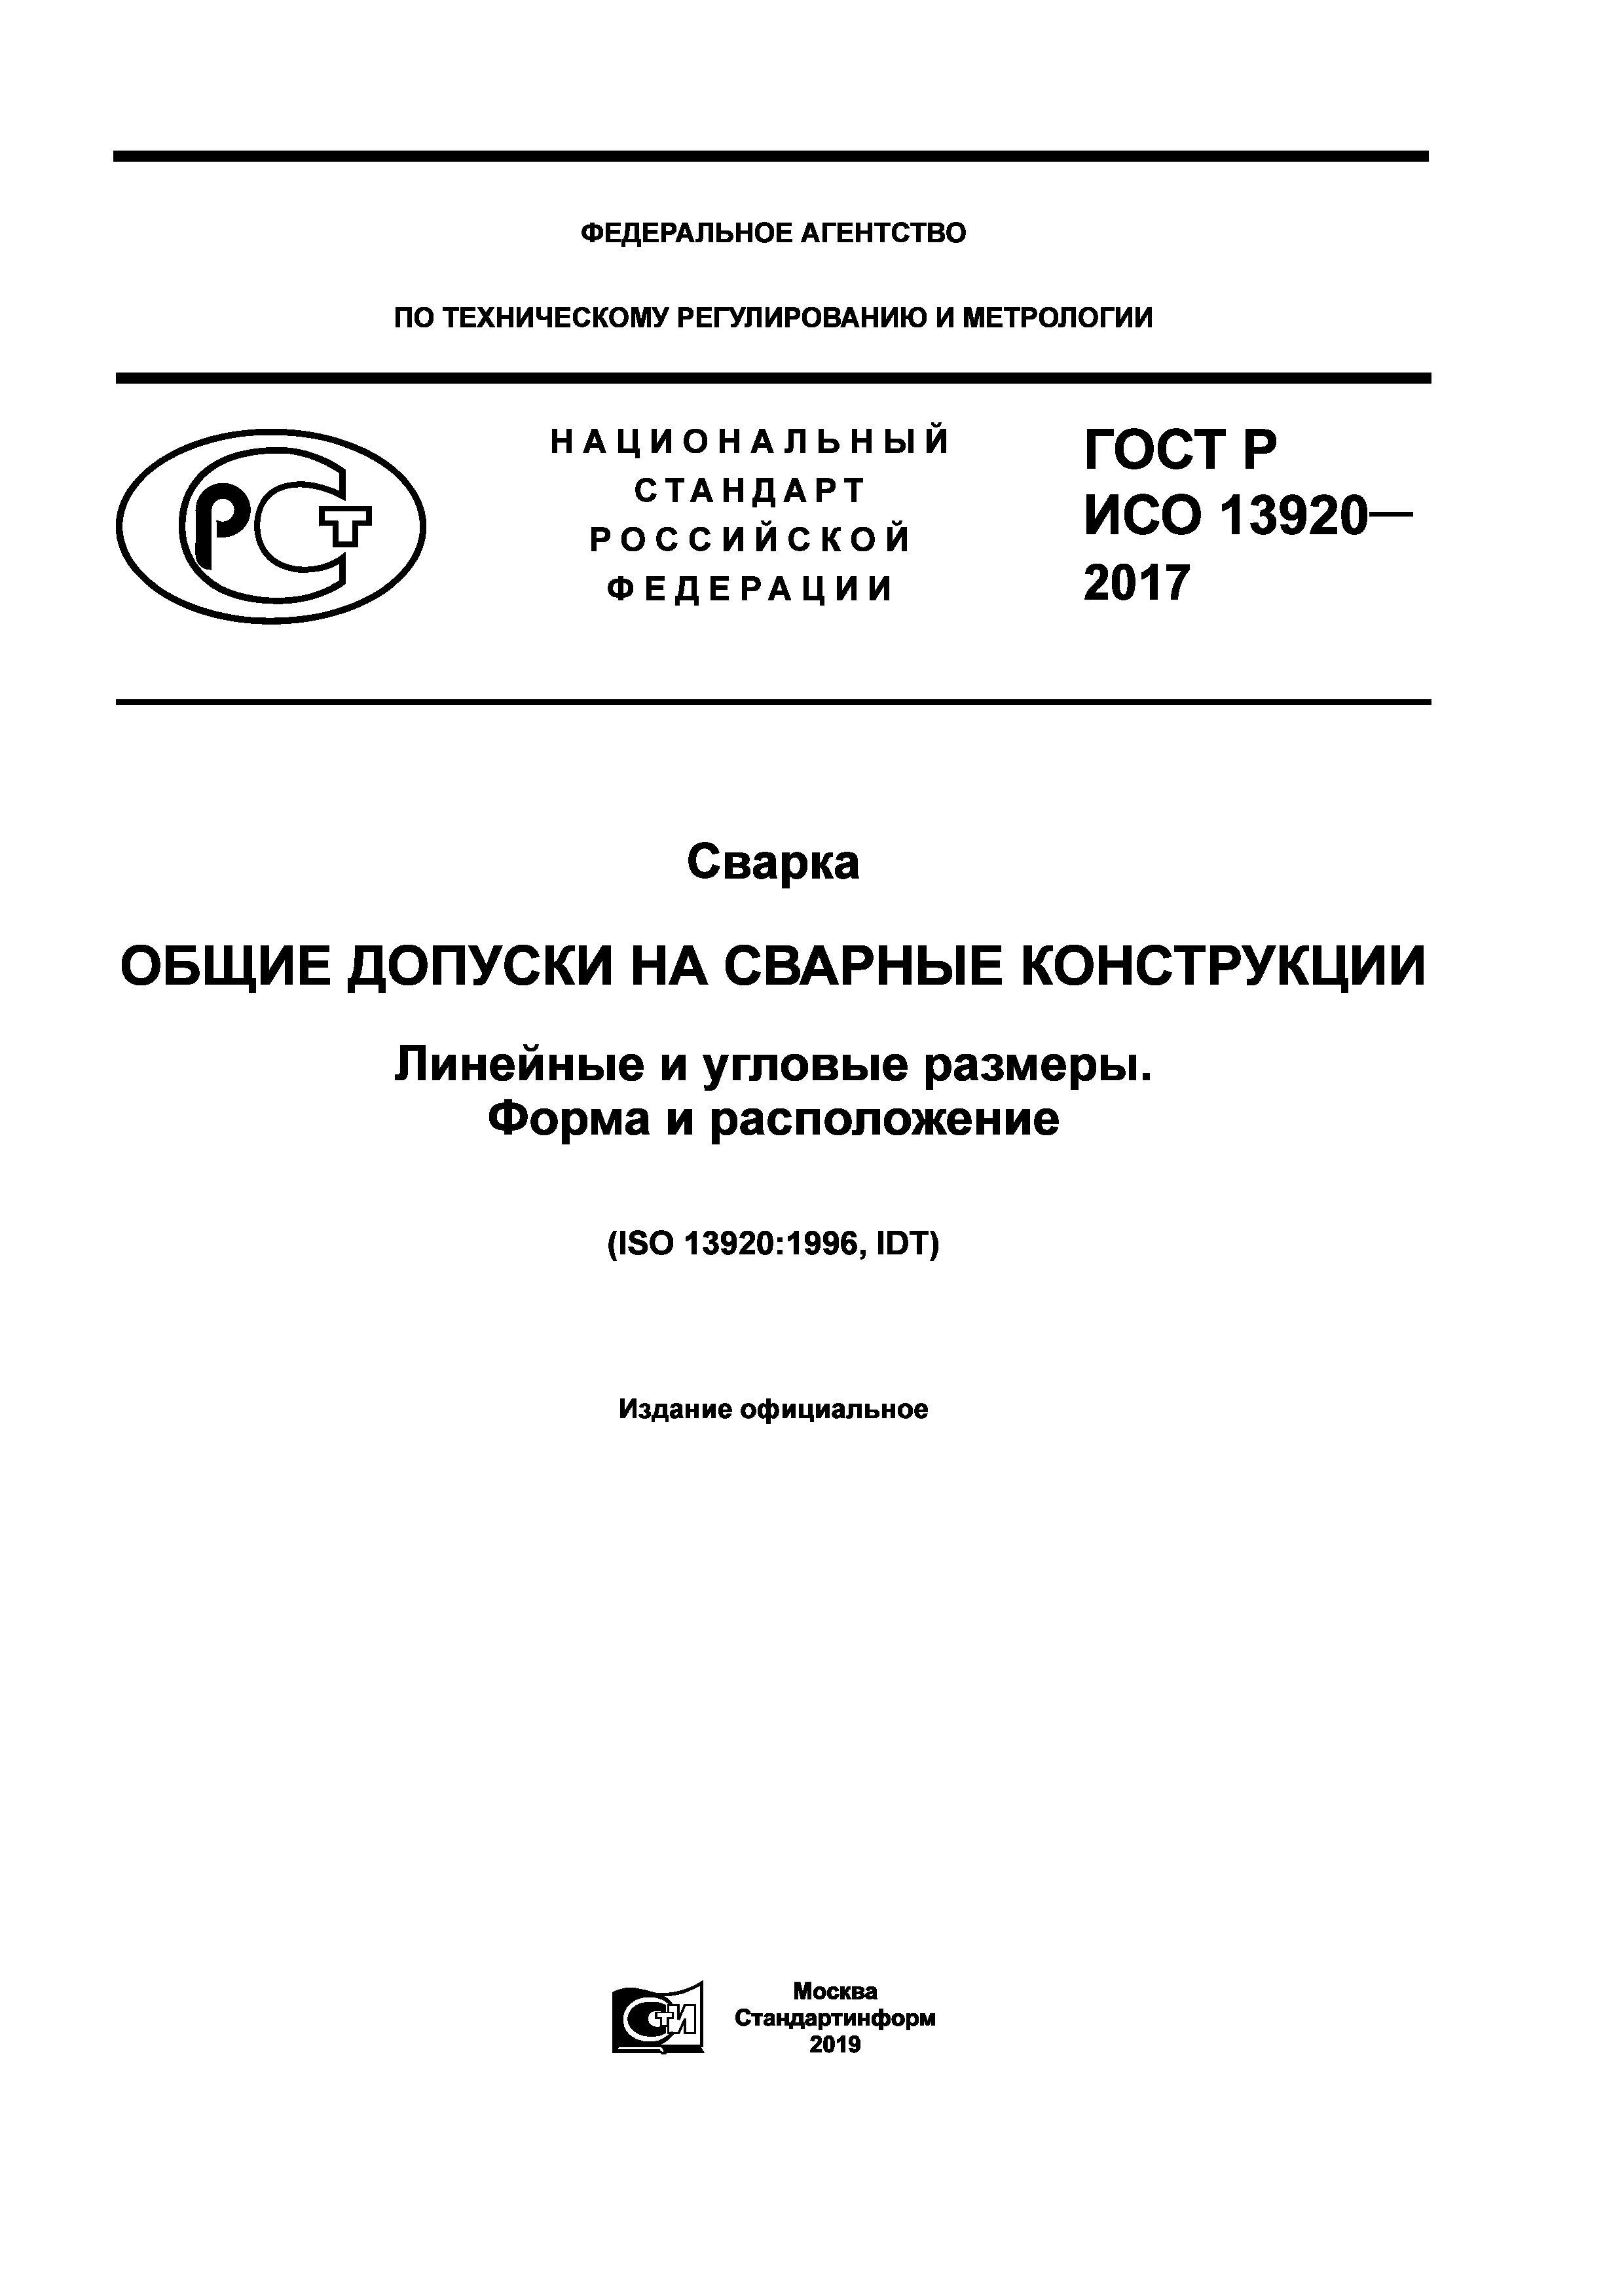 ГОСТ Р ИСО 13920-2017